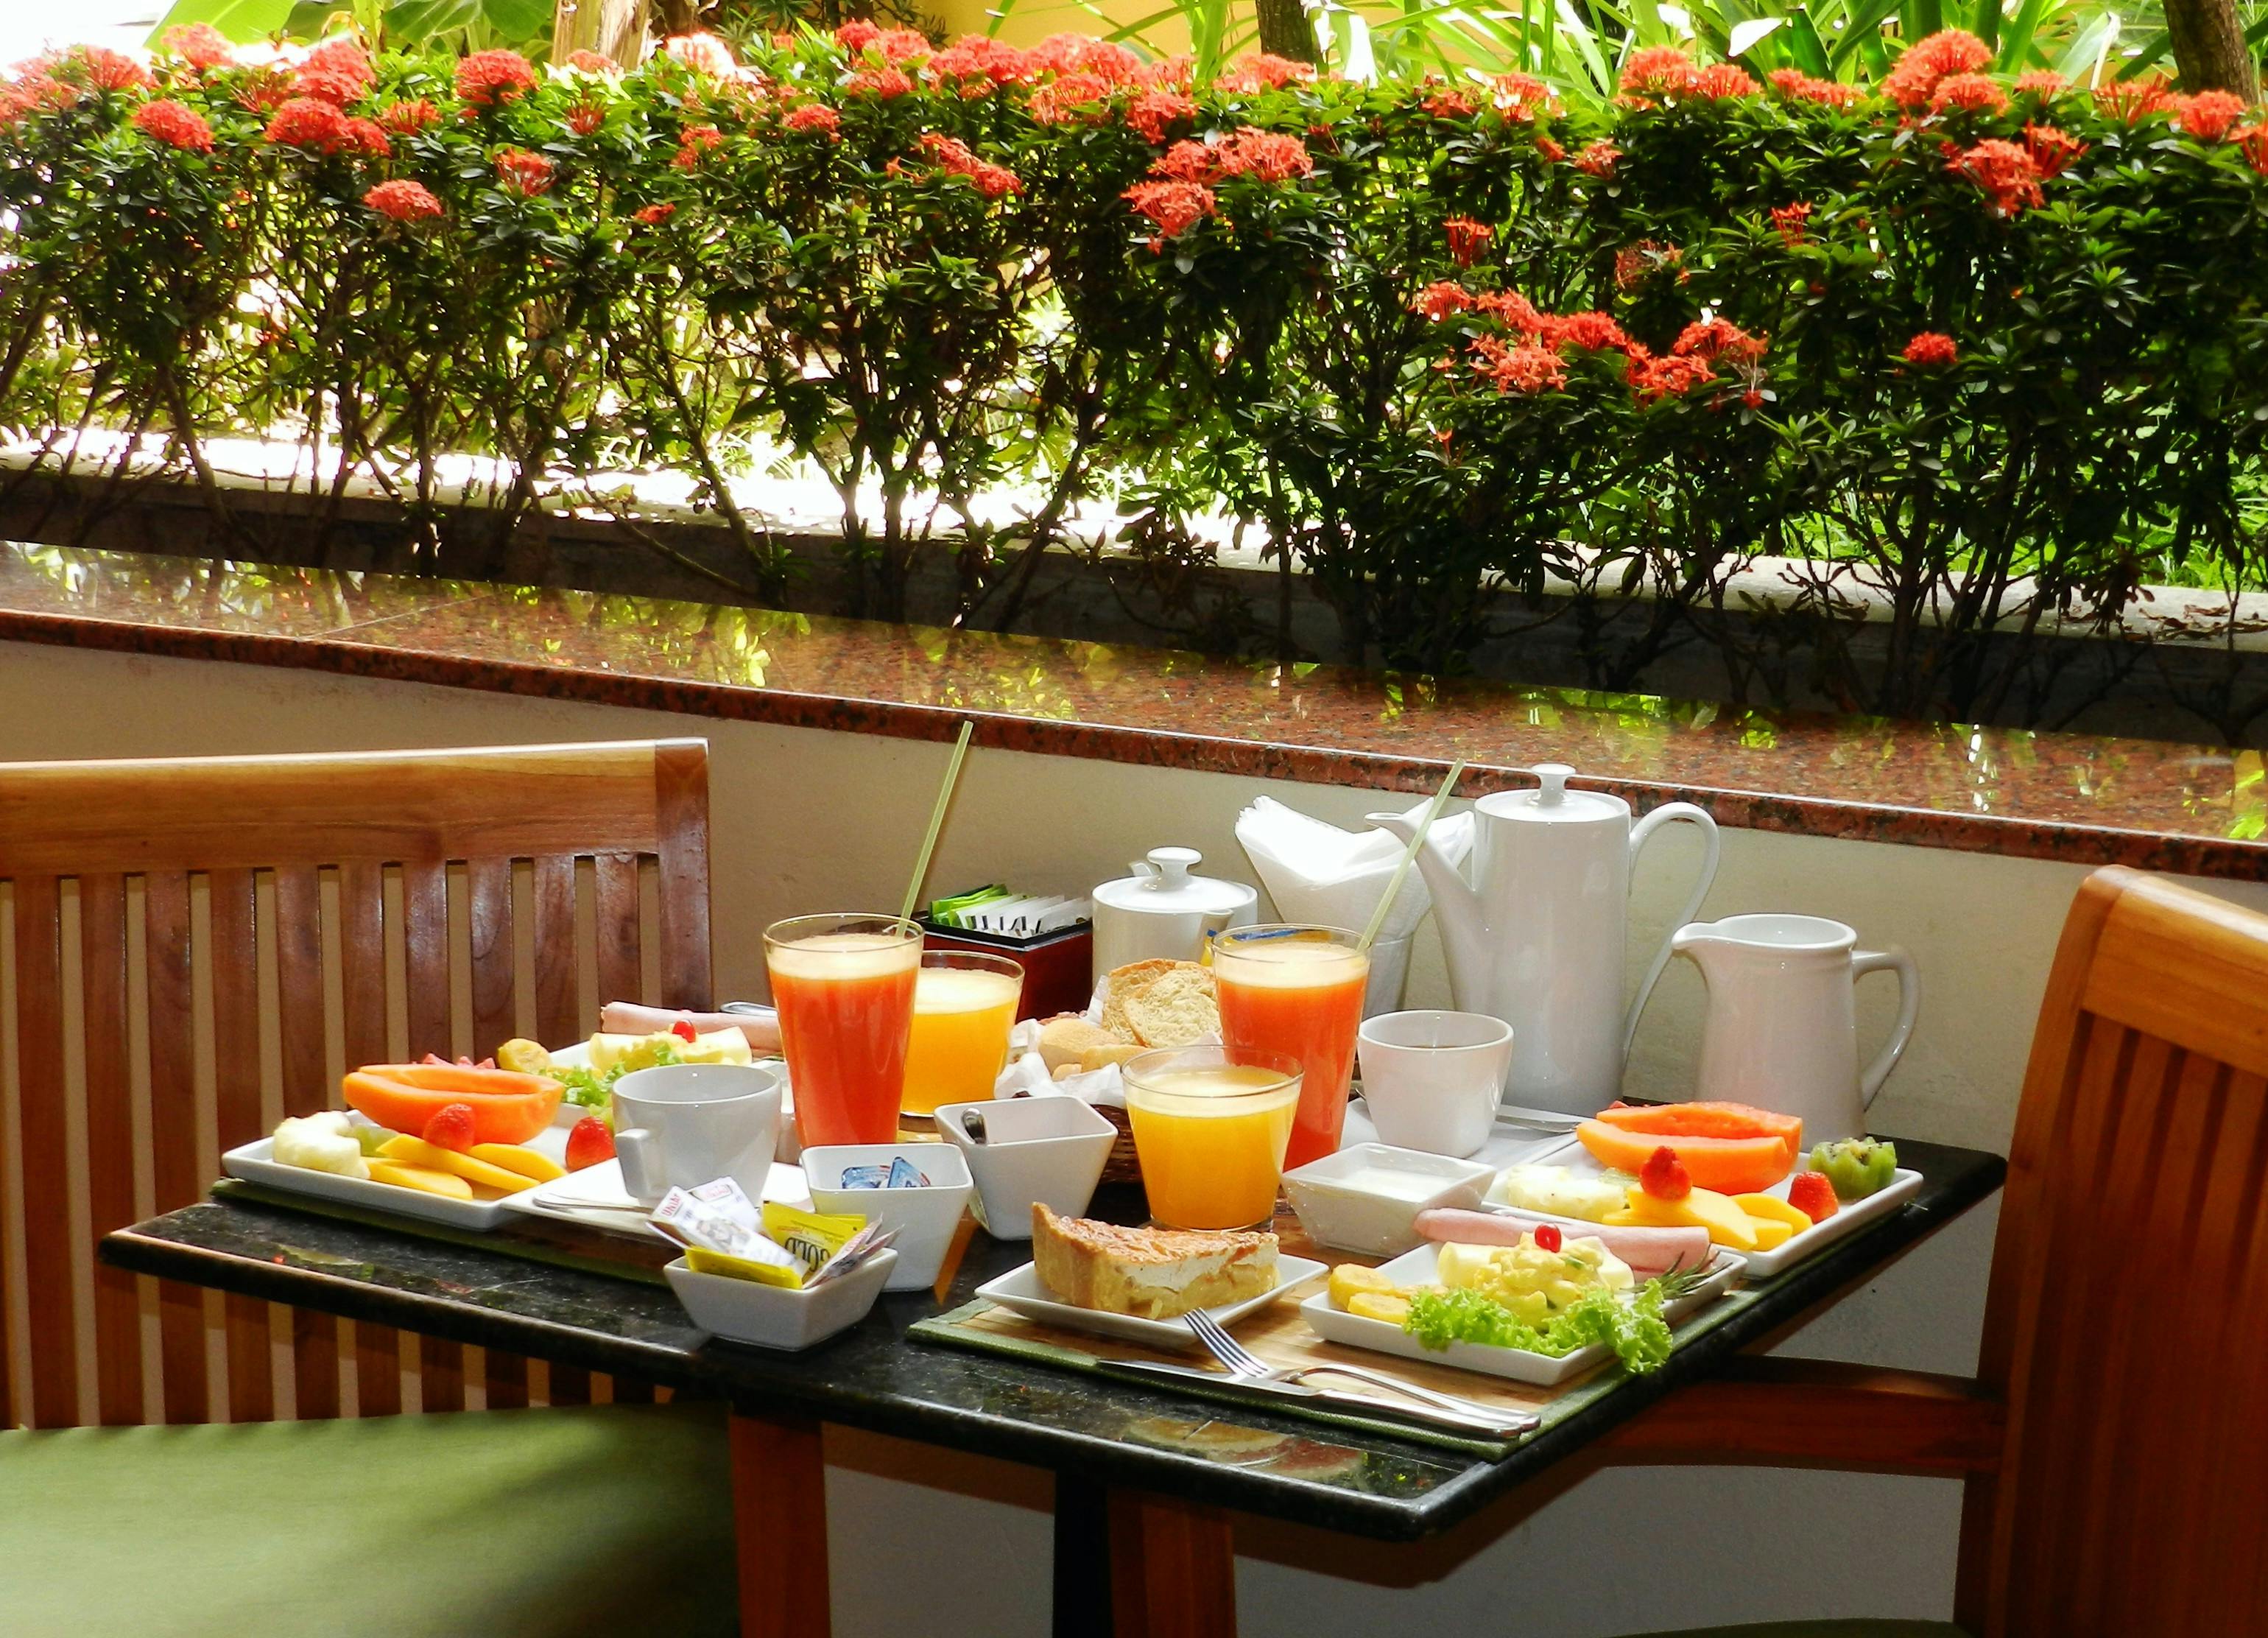 Hotel Casa do Amarelindo café da manhã com frutas e sucos